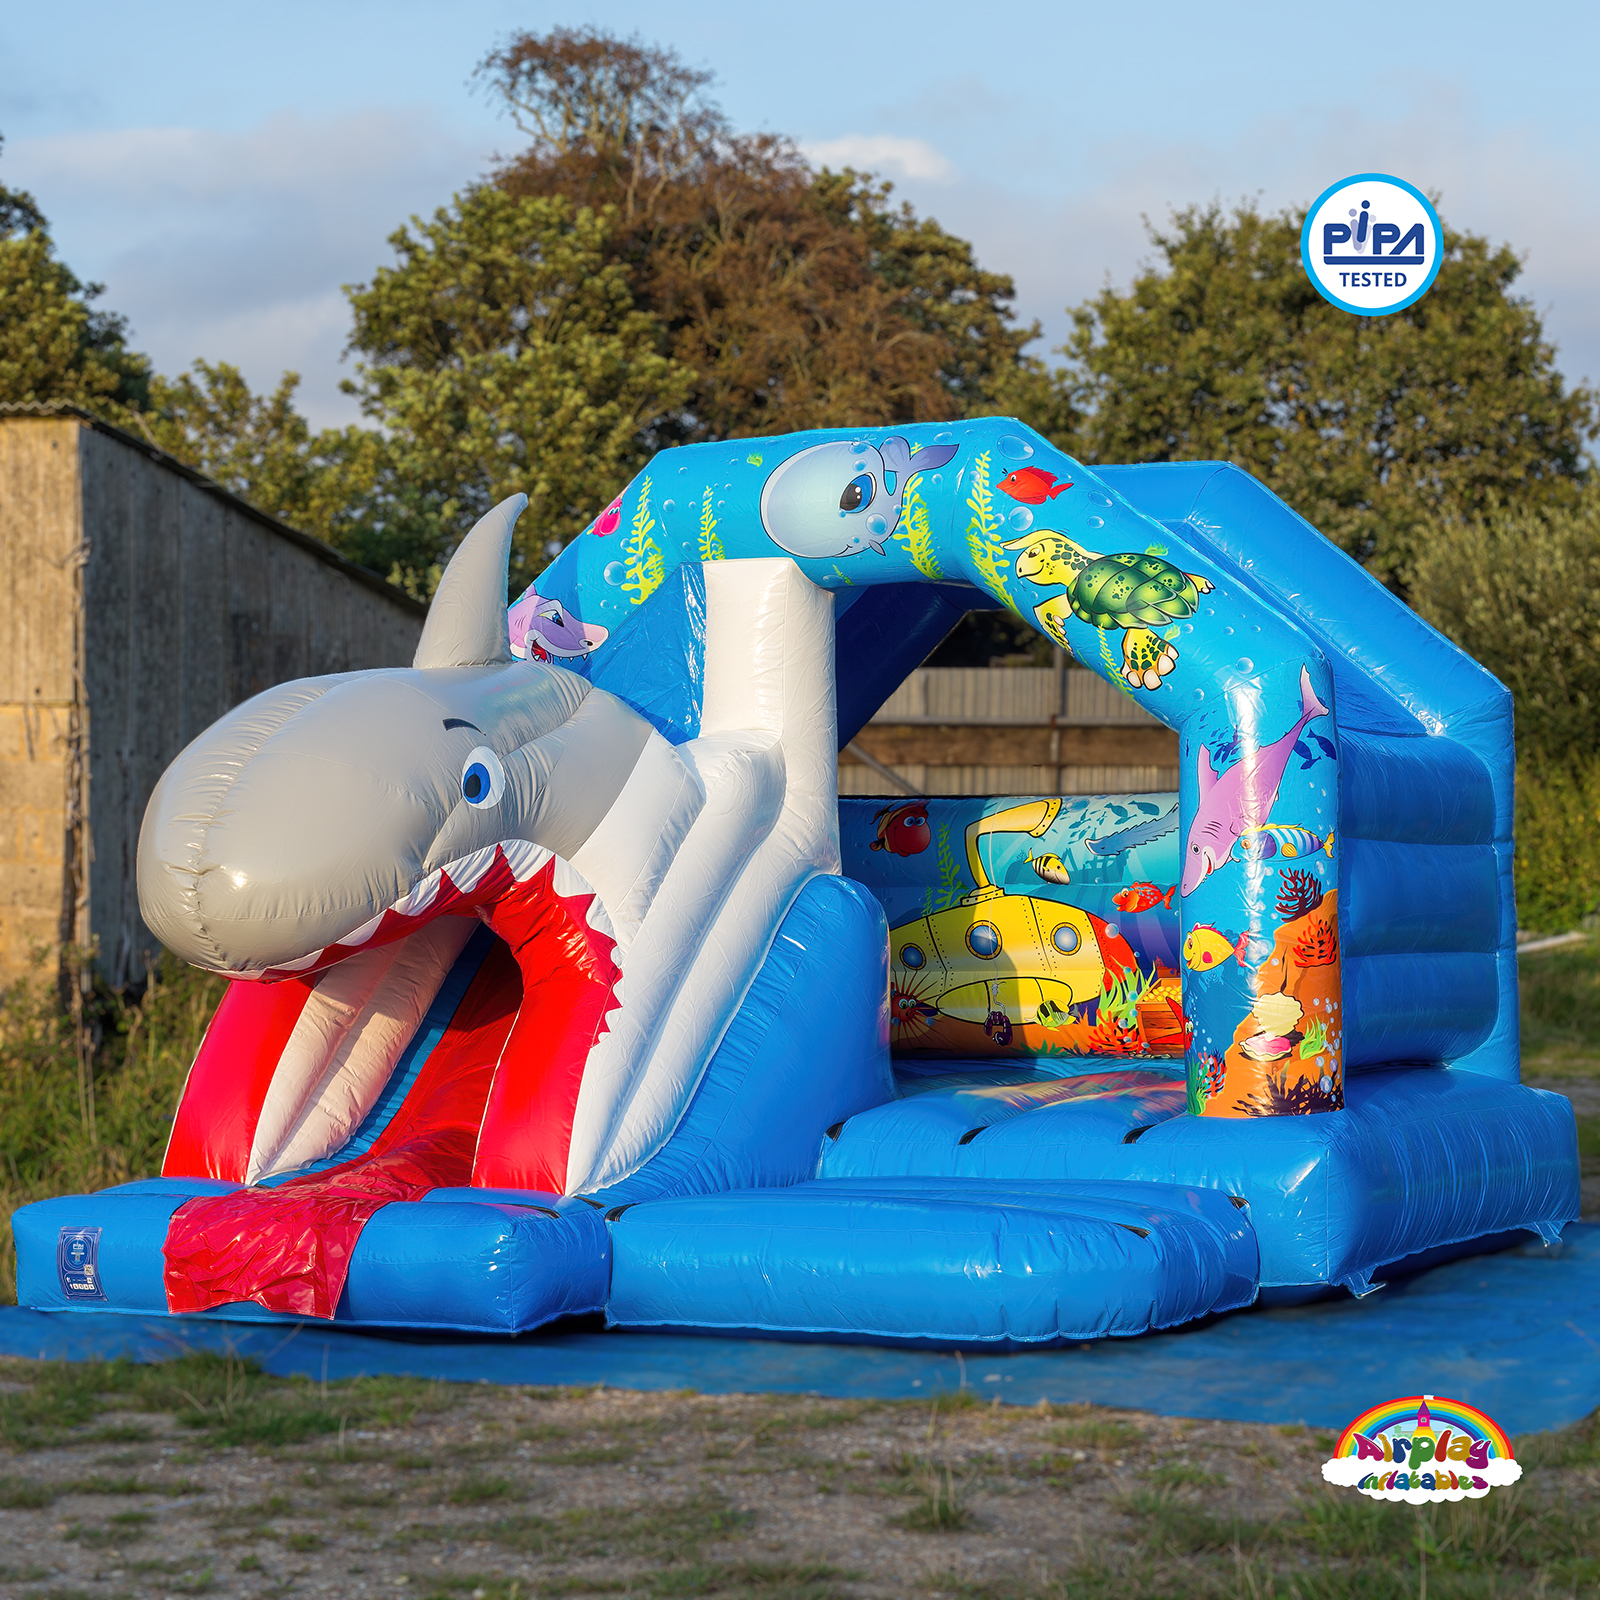 SeaWorld bouncy castle hire